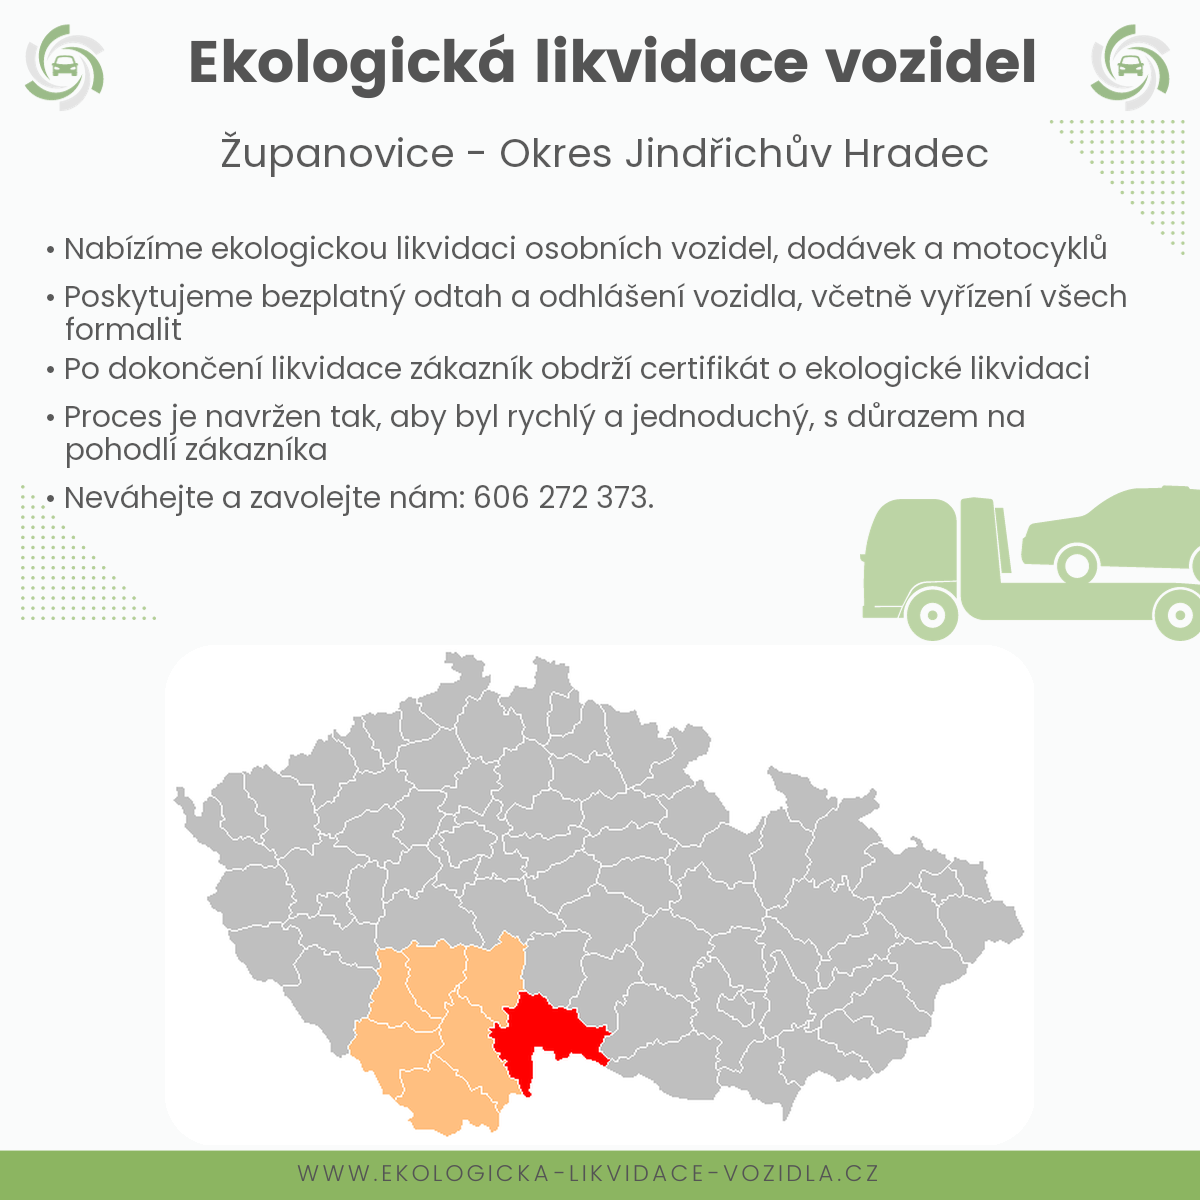 likvidace vozidel - Županovice